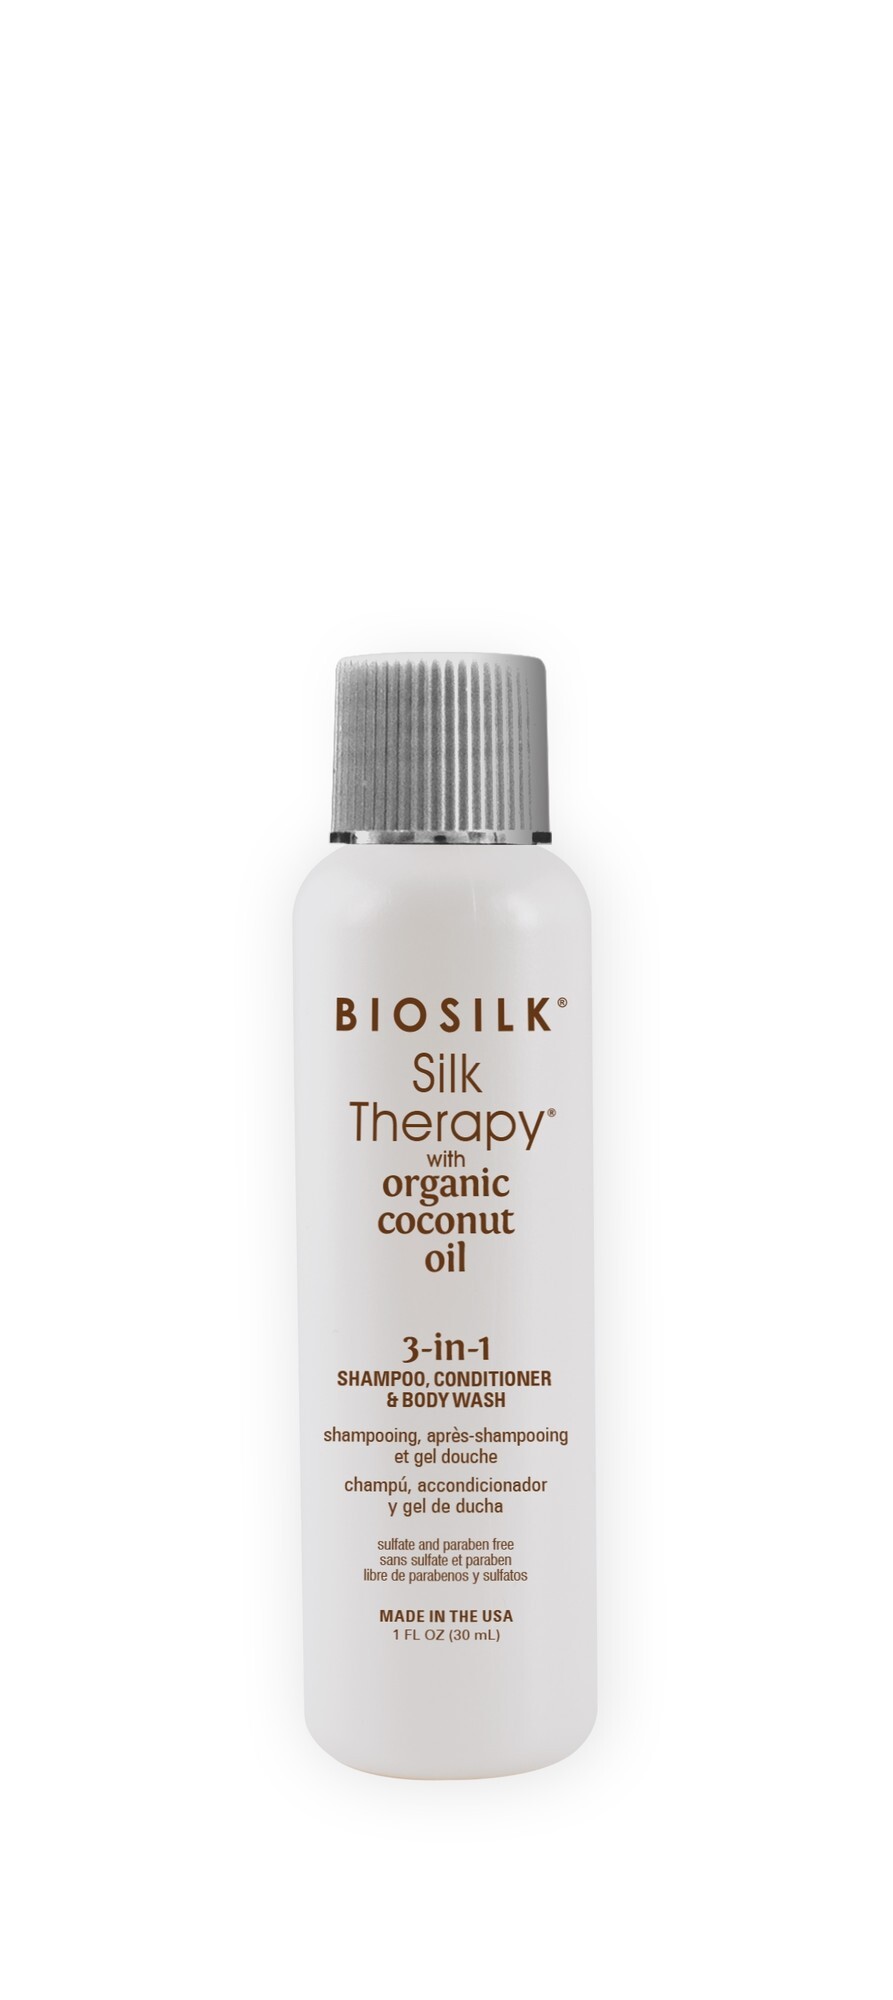 Biosilk Silk Therapy with Coconut Oil 3 in 1 30ml